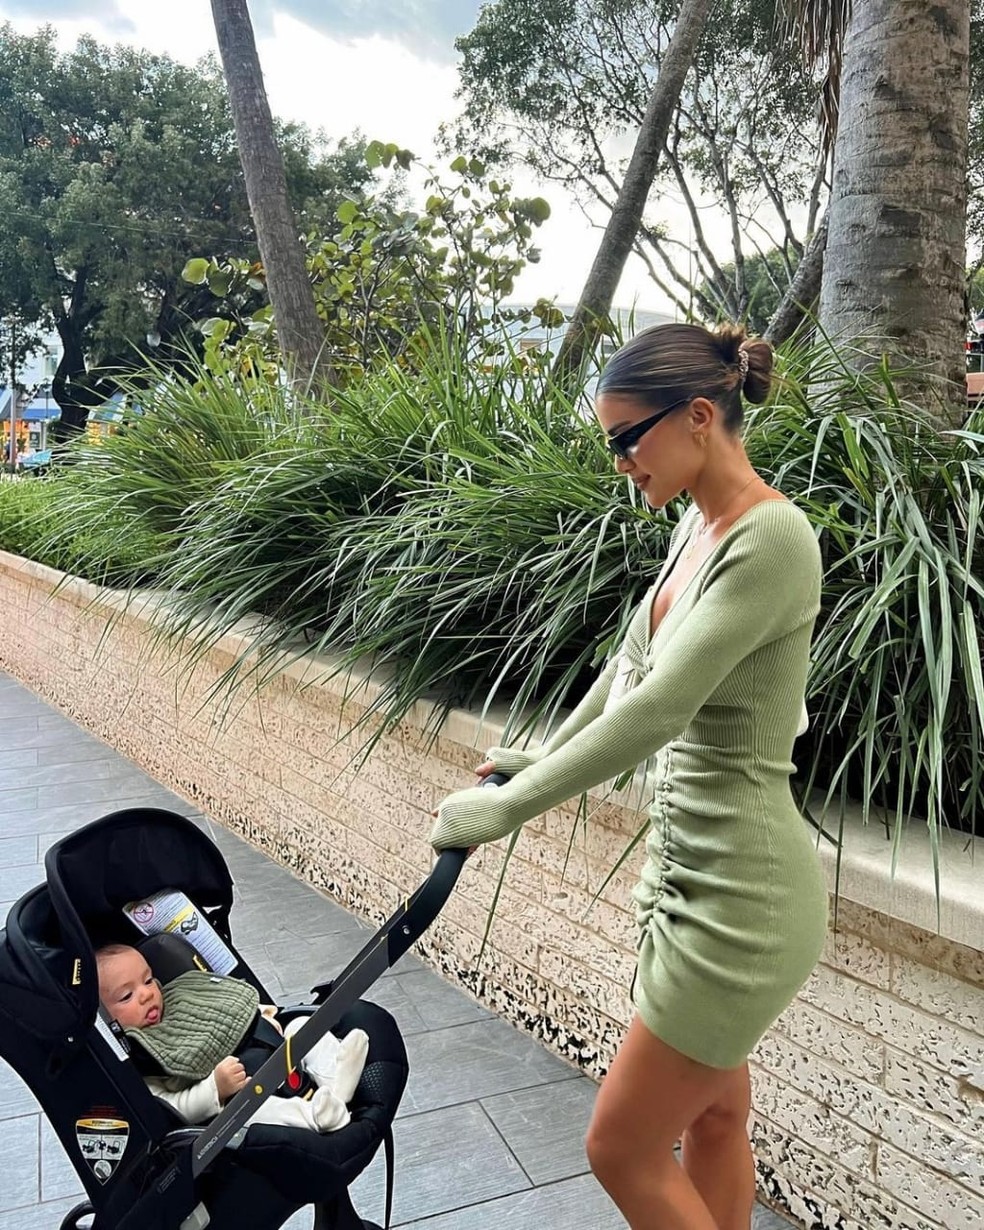 Camila Coelho passeia com o filho, Kai, Celebridades